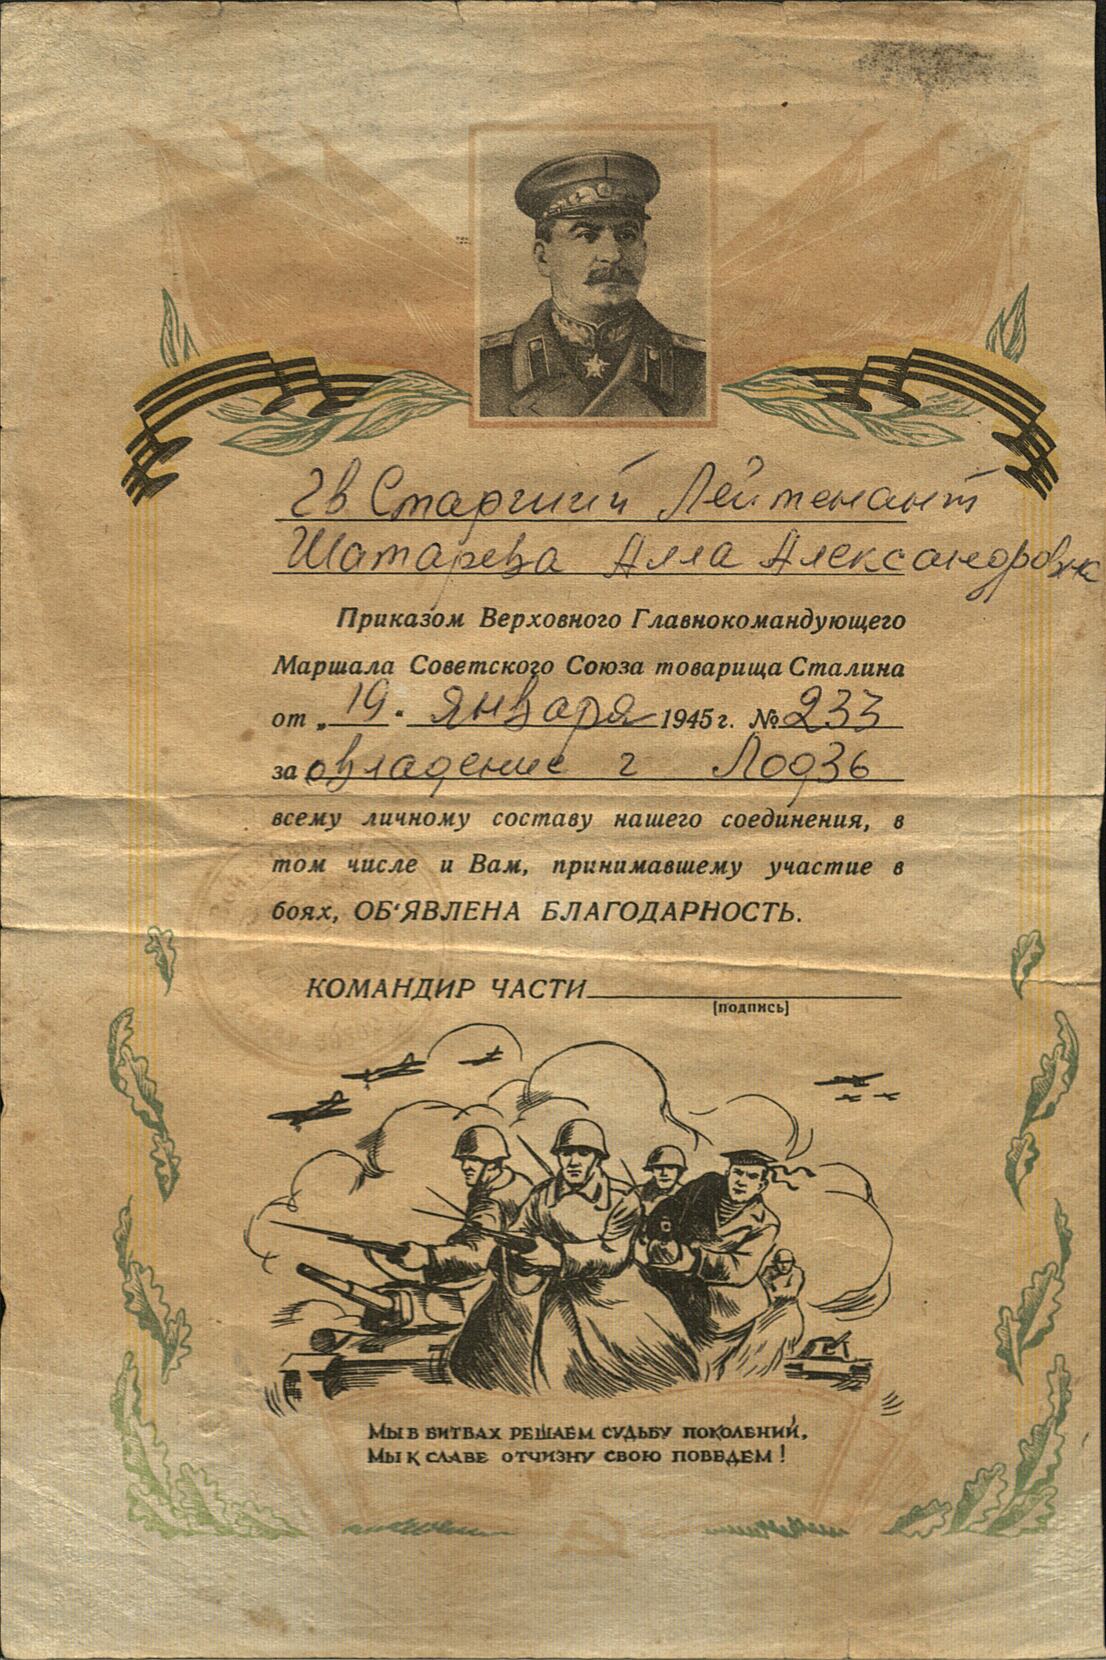 Благодарность Анне Александровне Шатаревой за овладение г. Лодзь 19 января 1945 г. 